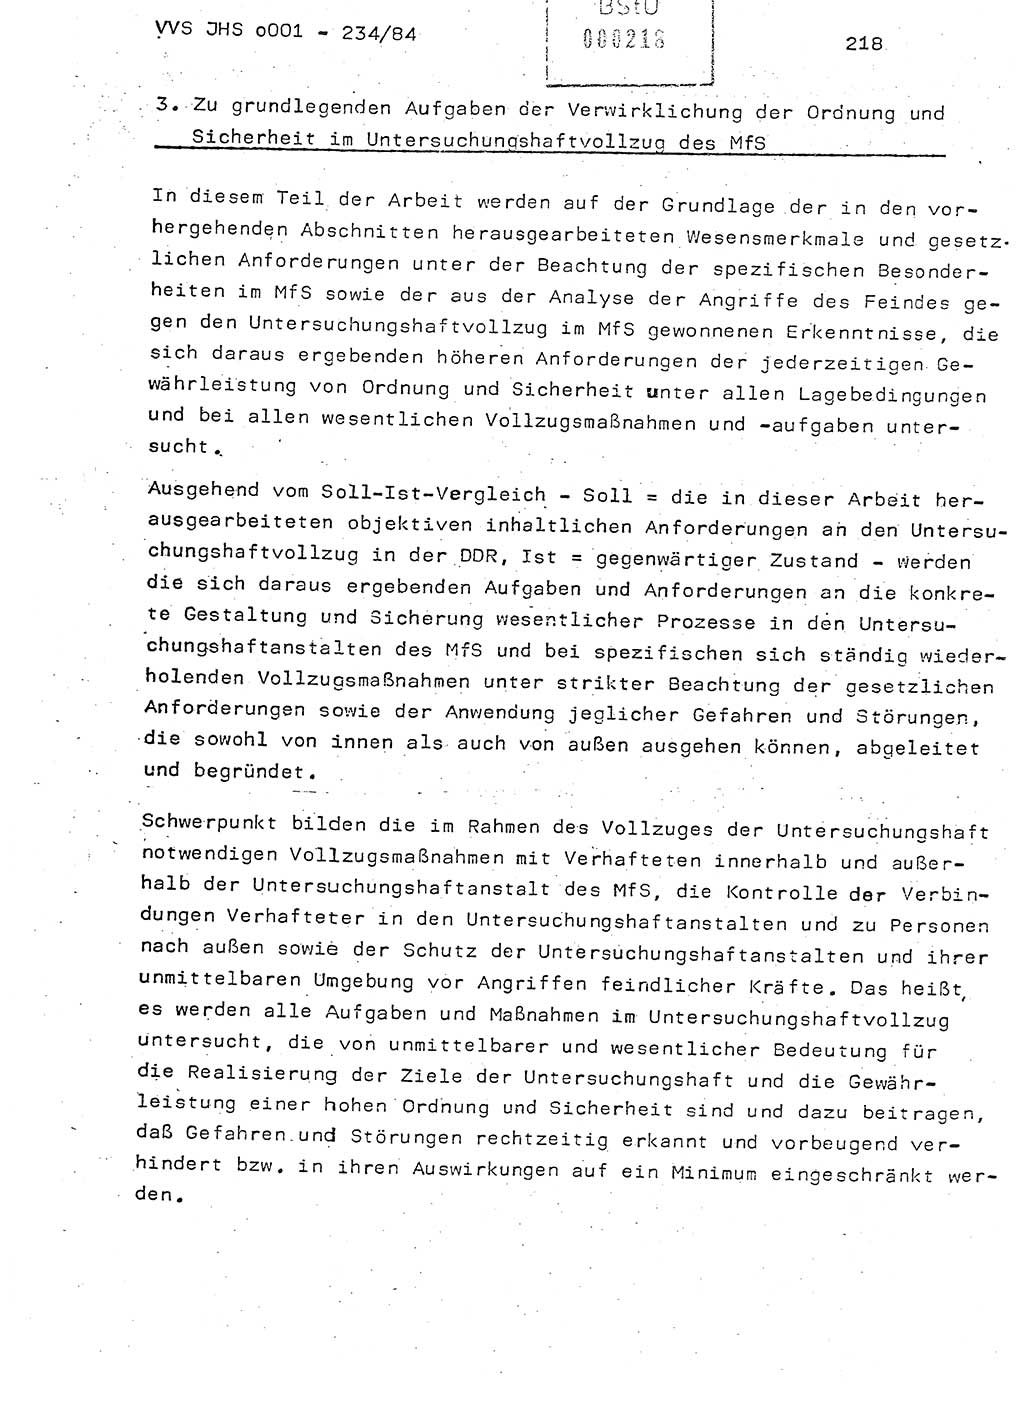 Dissertation Oberst Siegfried Rataizick (Abt. ⅩⅣ), Oberstleutnant Volkmar Heinz (Abt. ⅩⅣ), Oberstleutnant Werner Stein (HA Ⅸ), Hauptmann Heinz Conrad (JHS), Ministerium für Staatssicherheit (MfS) [Deutsche Demokratische Republik (DDR)], Juristische Hochschule (JHS), Vertrauliche Verschlußsache (VVS) o001-234/84, Potsdam 1984, Seite 218 (Diss. MfS DDR JHS VVS o001-234/84 1984, S. 218)